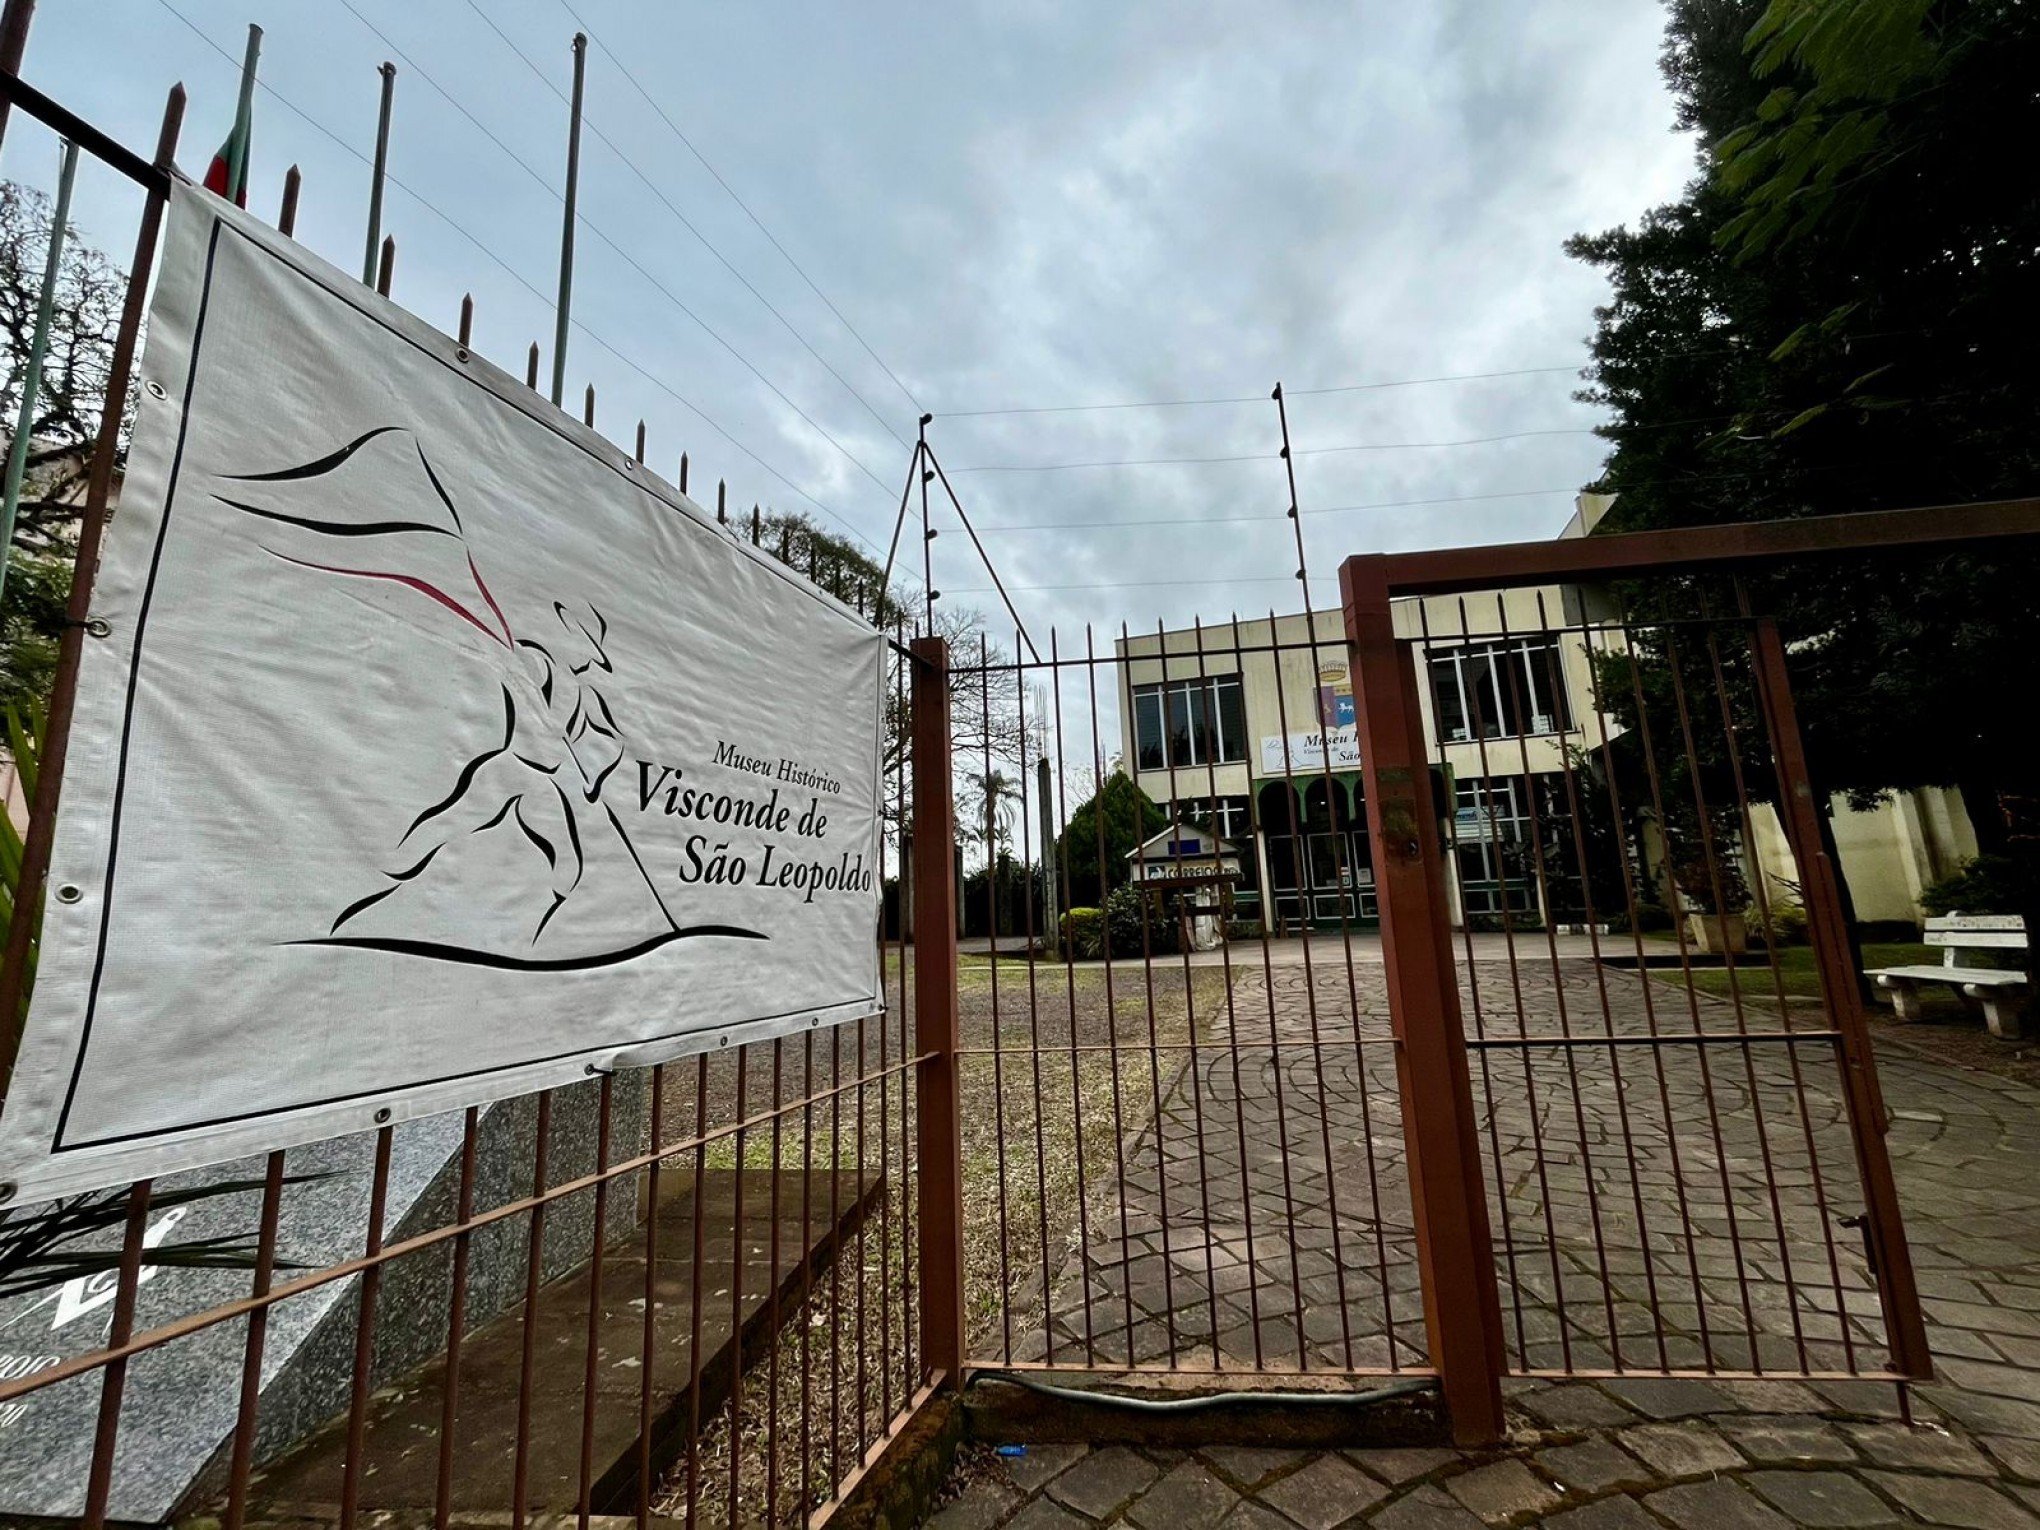 Repasses da Prefeitura ao Museu de São Leopoldo estão atrasados há seis meses